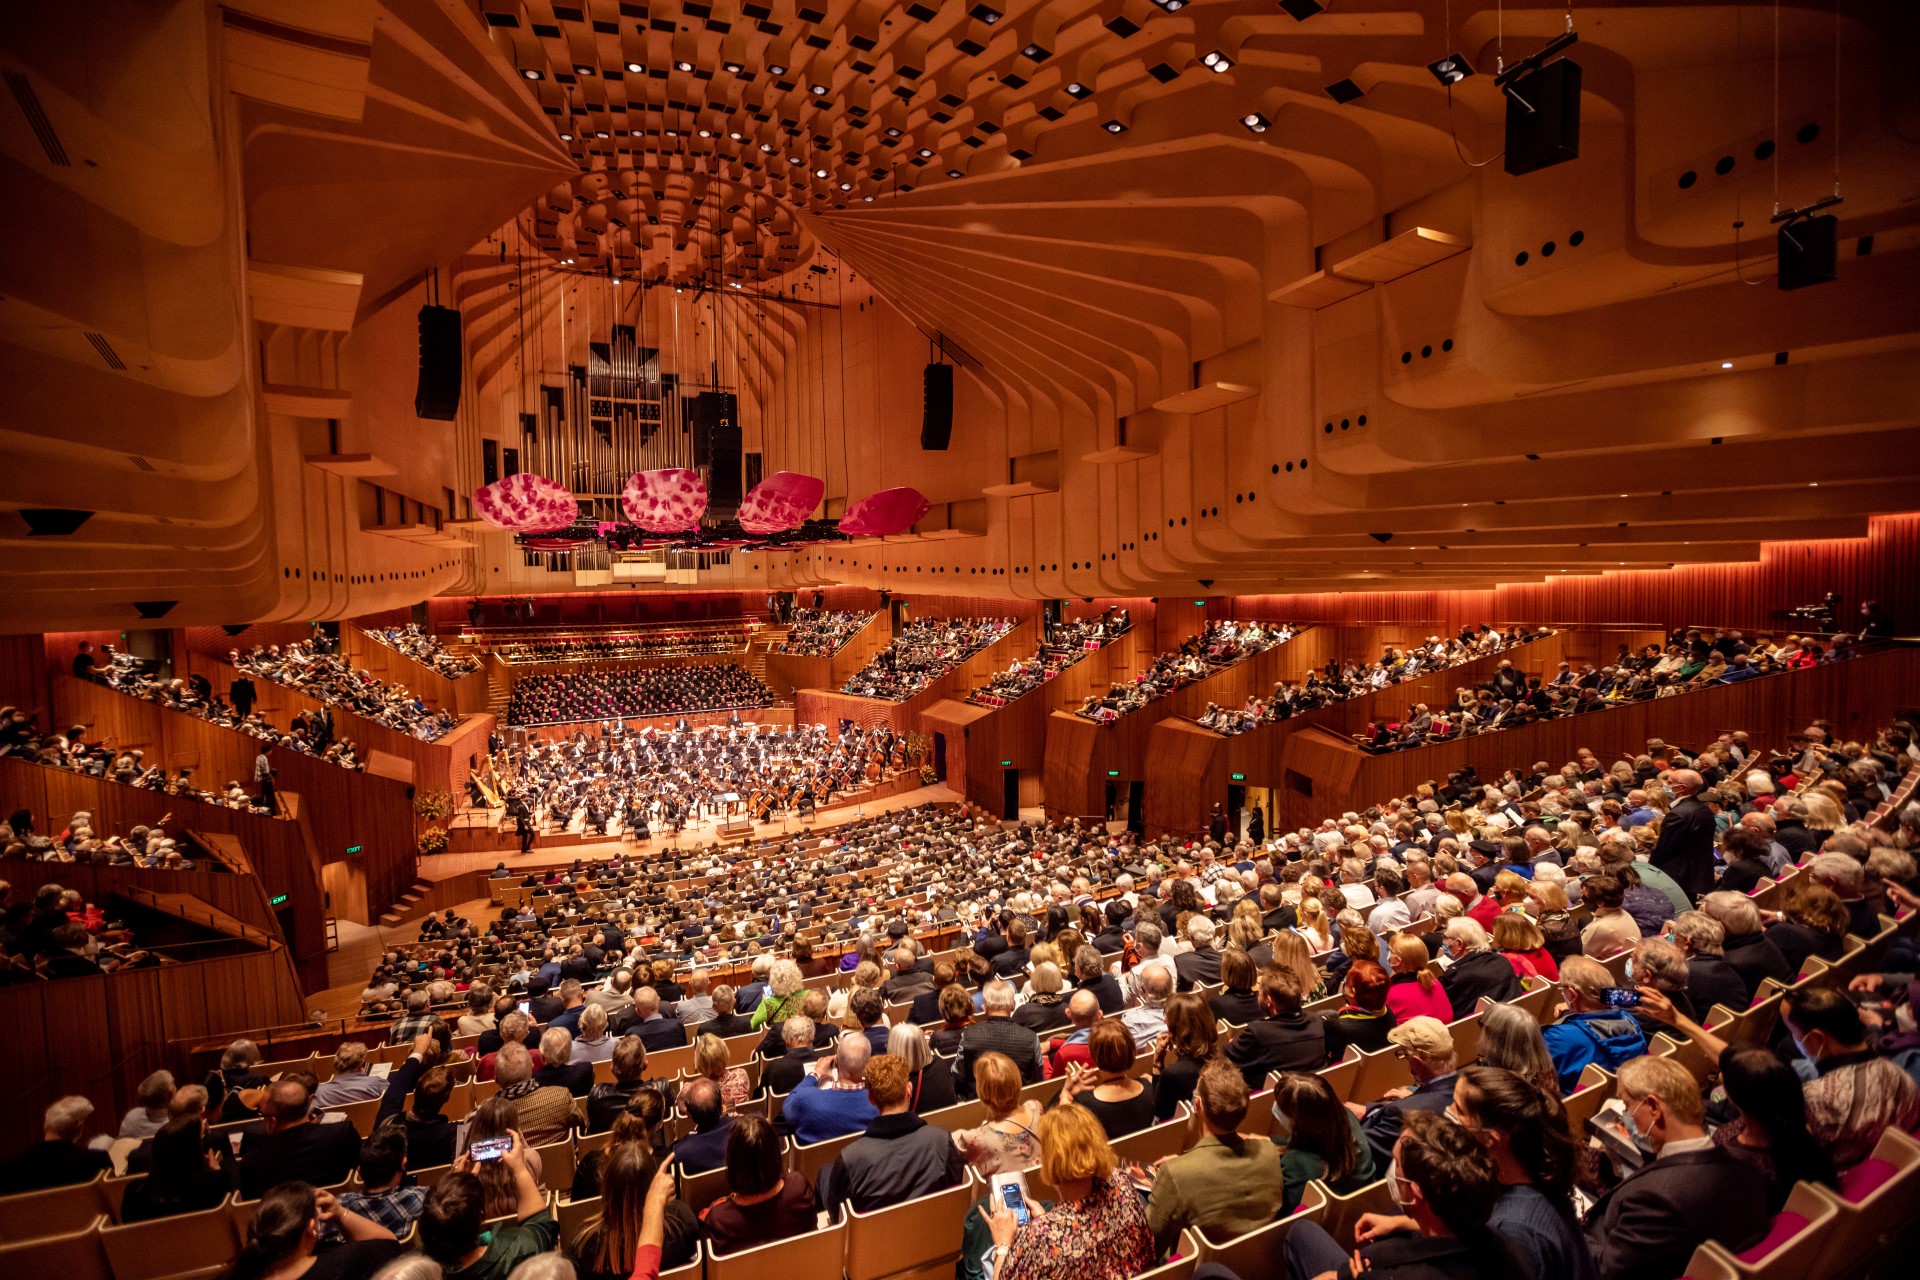 Besucher des Festivals erwarten zahlreiche Veranstaltungen, unter anderem auch Auftritte von renommierten Kammerorchestern in dem neu sanierten Konzertsaal. Foto: Daniel Boud